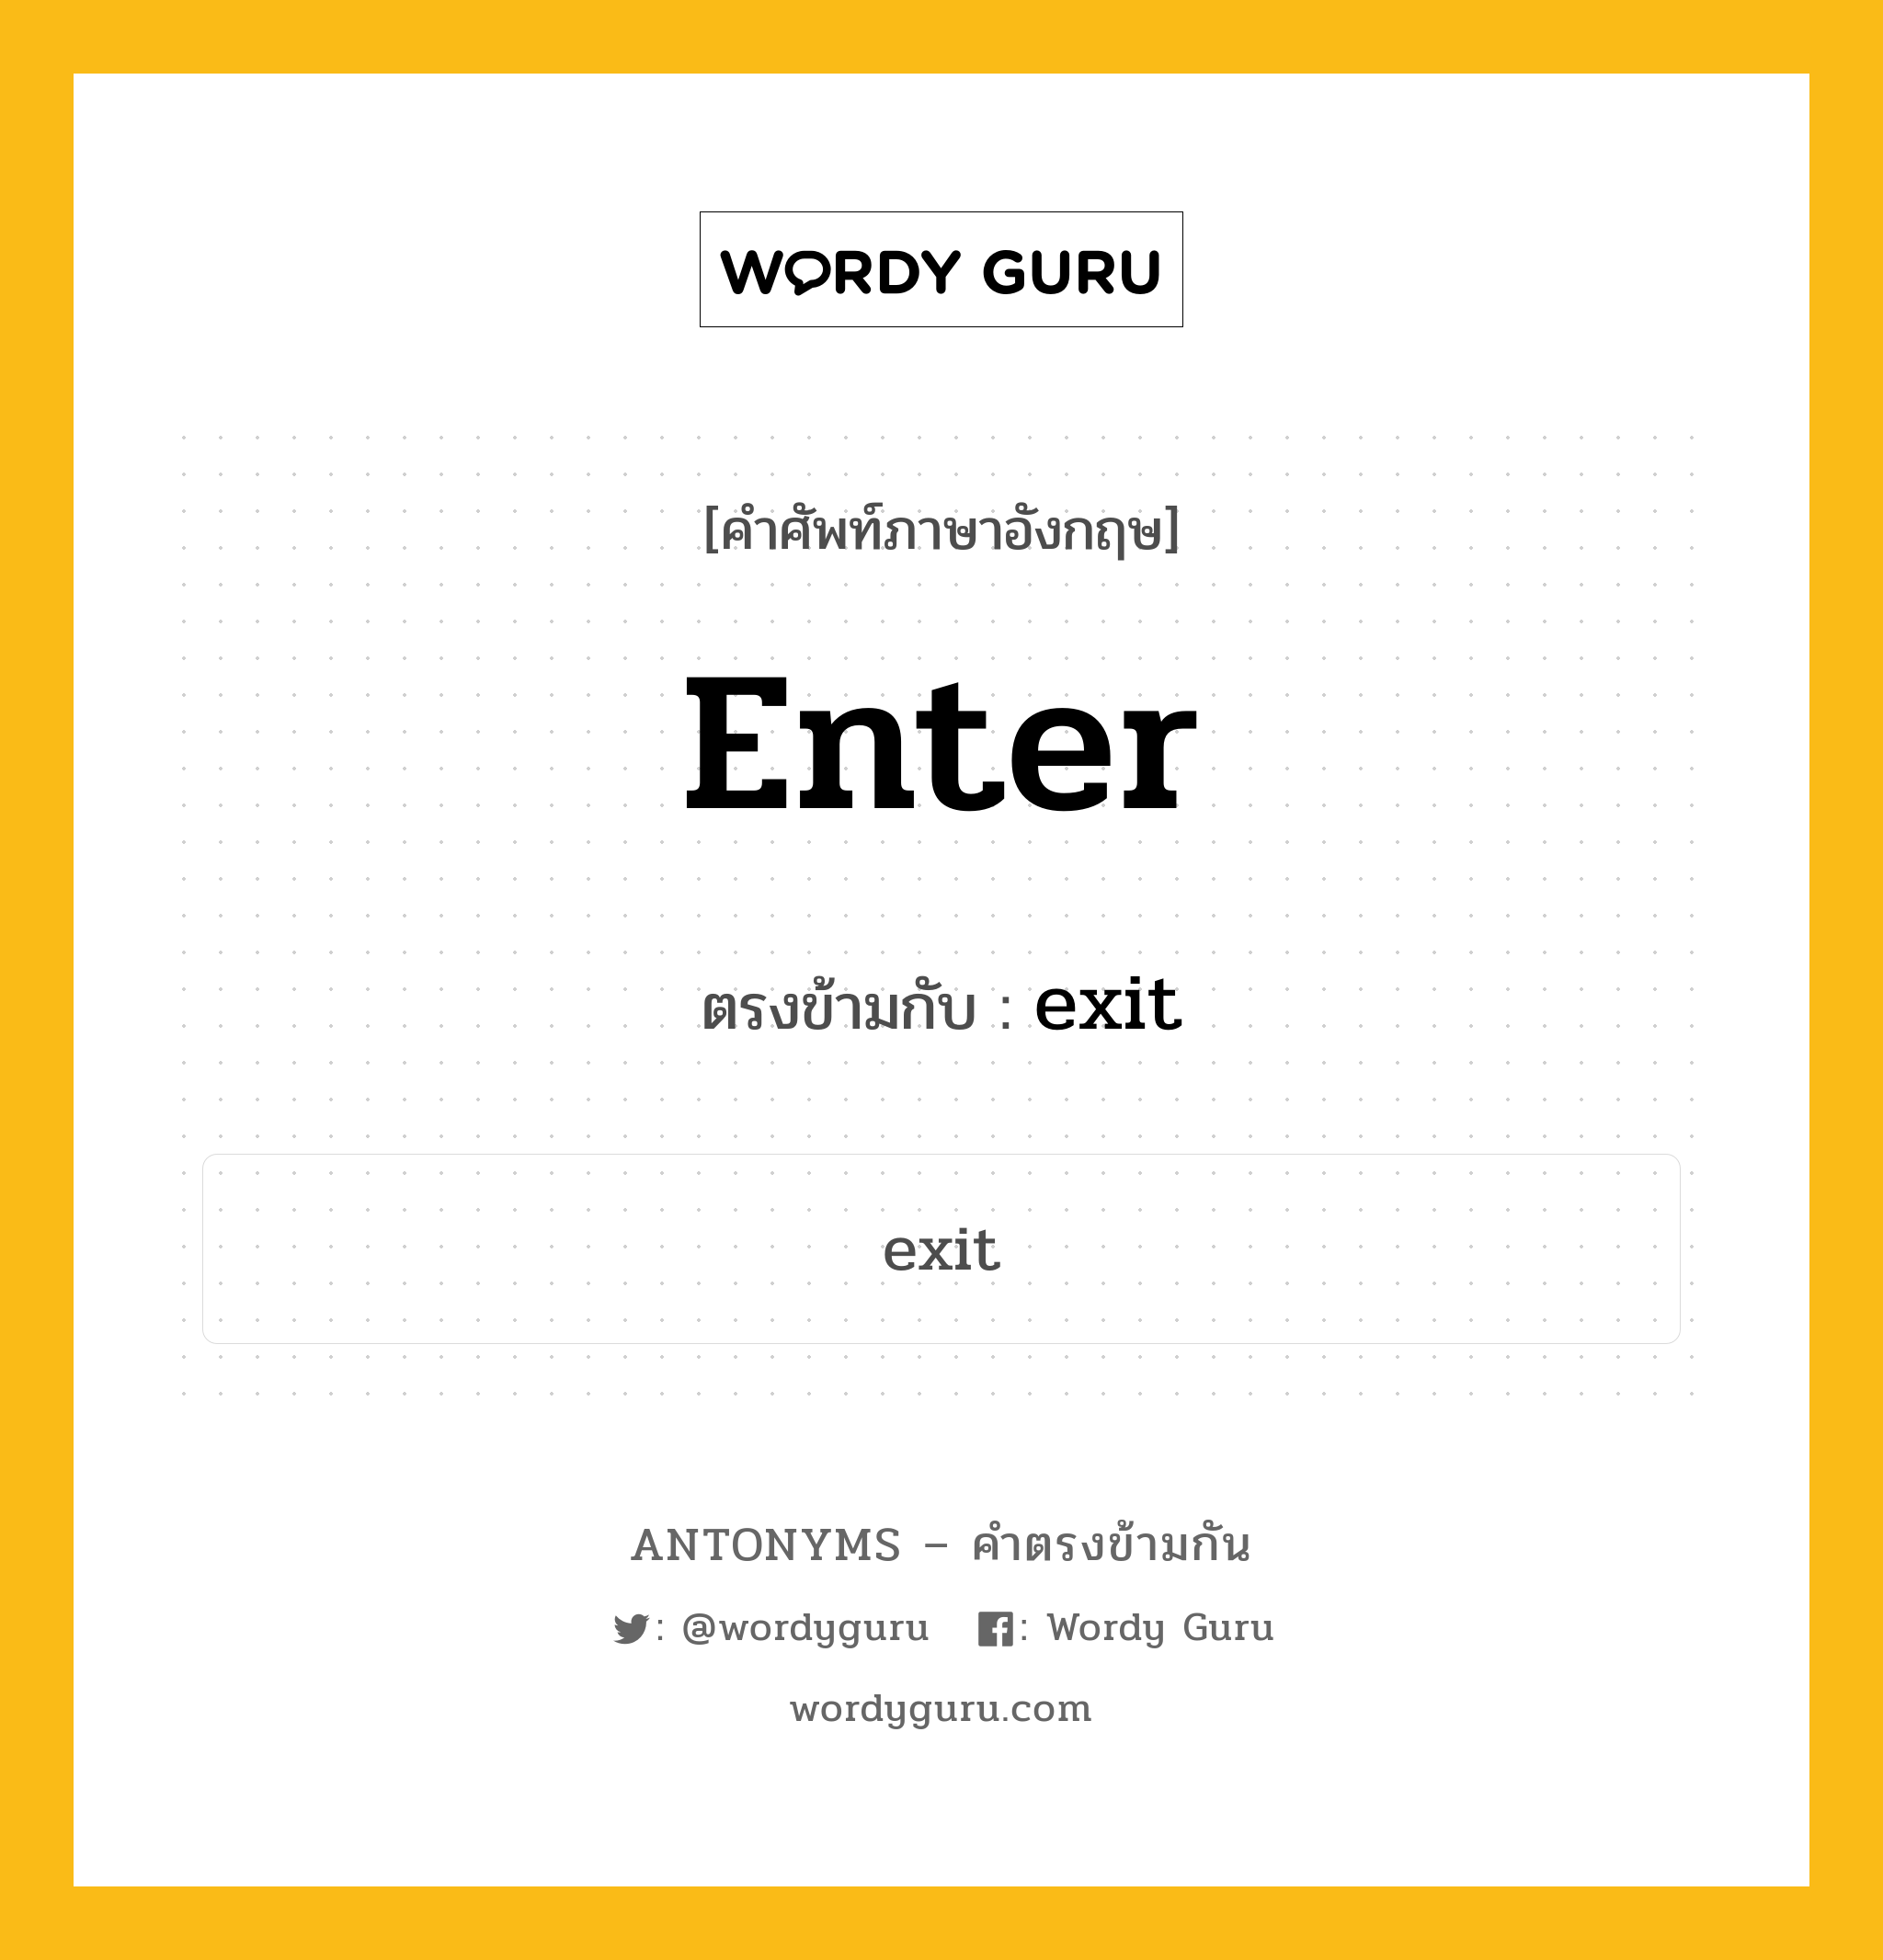 enter เป็นคำตรงข้ามกับคำไหนบ้าง?, คำศัพท์ภาษาอังกฤษ enter ตรงข้ามกับ exit หมวด exit